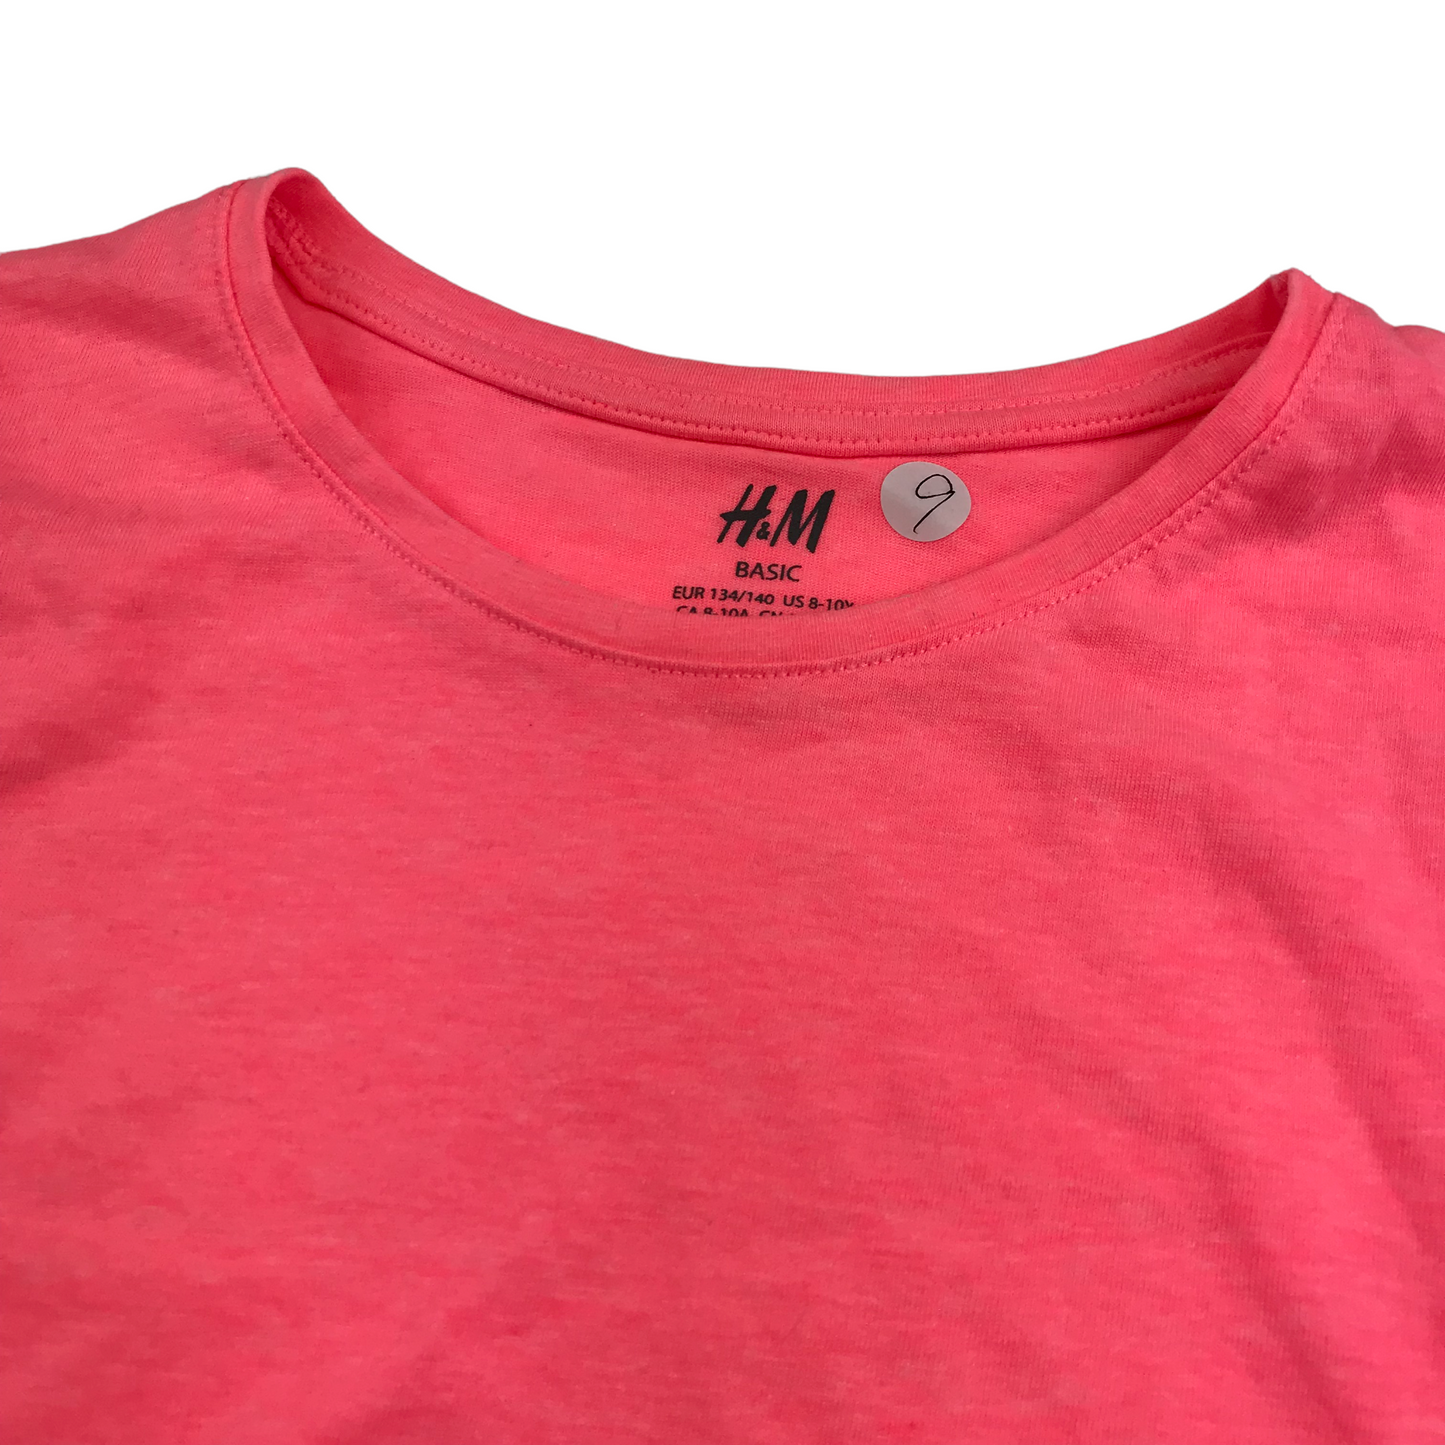 H&M Pink Plain T-shirt Age 9